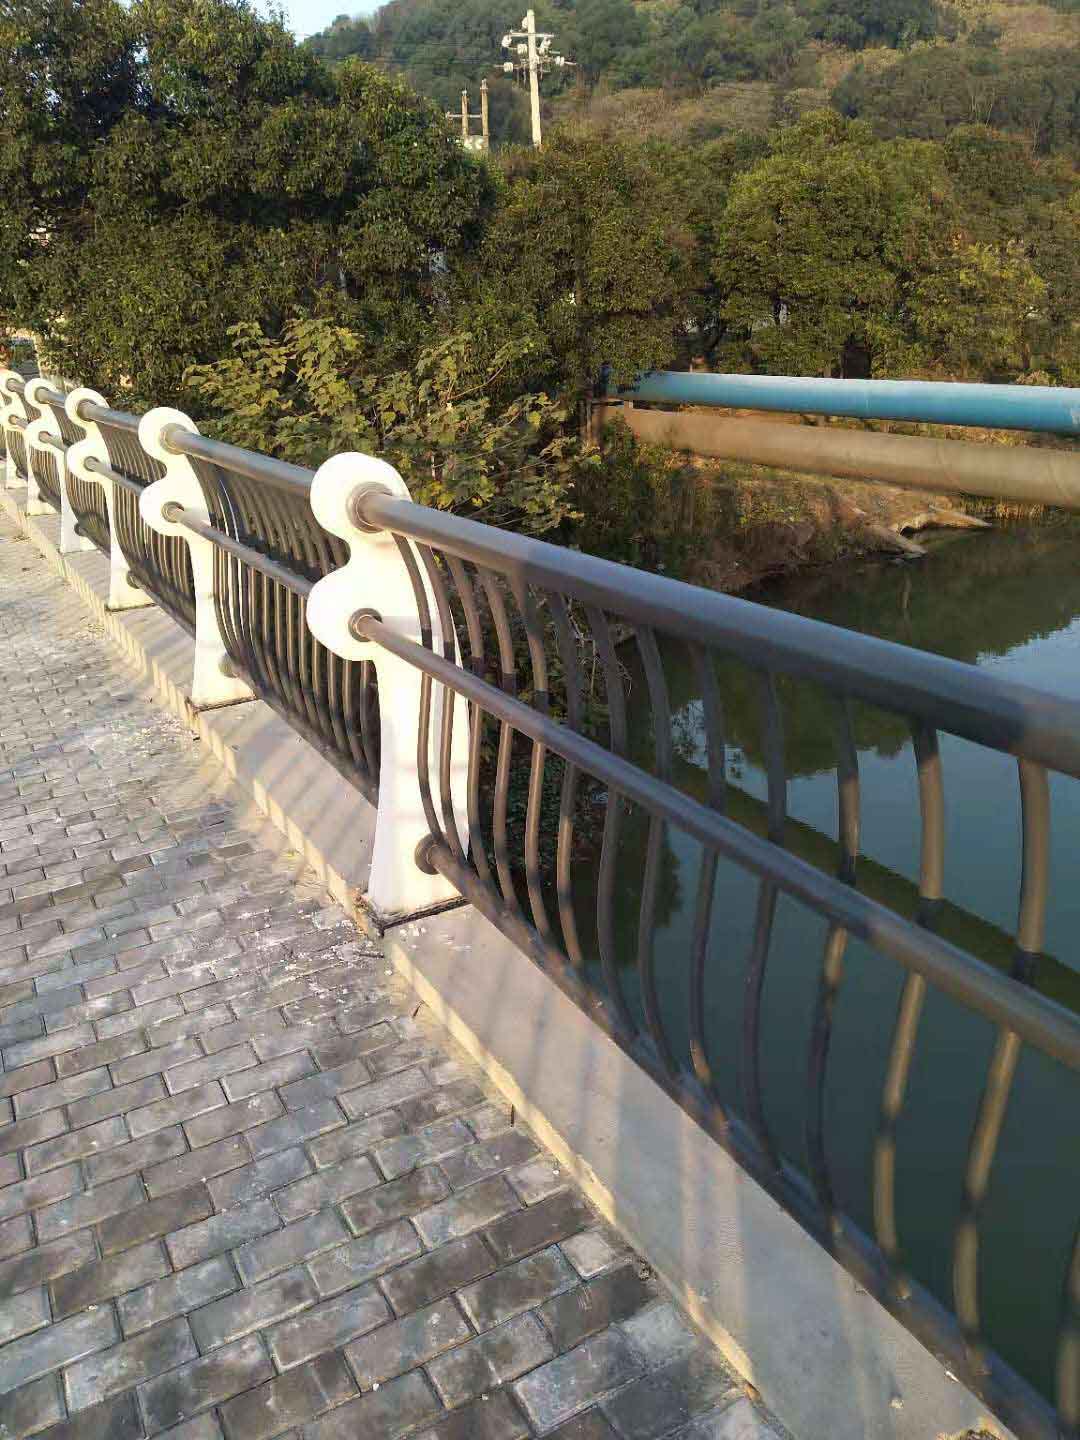 宁波北仑滨海快速路一号、四号桥桥梁栏杆